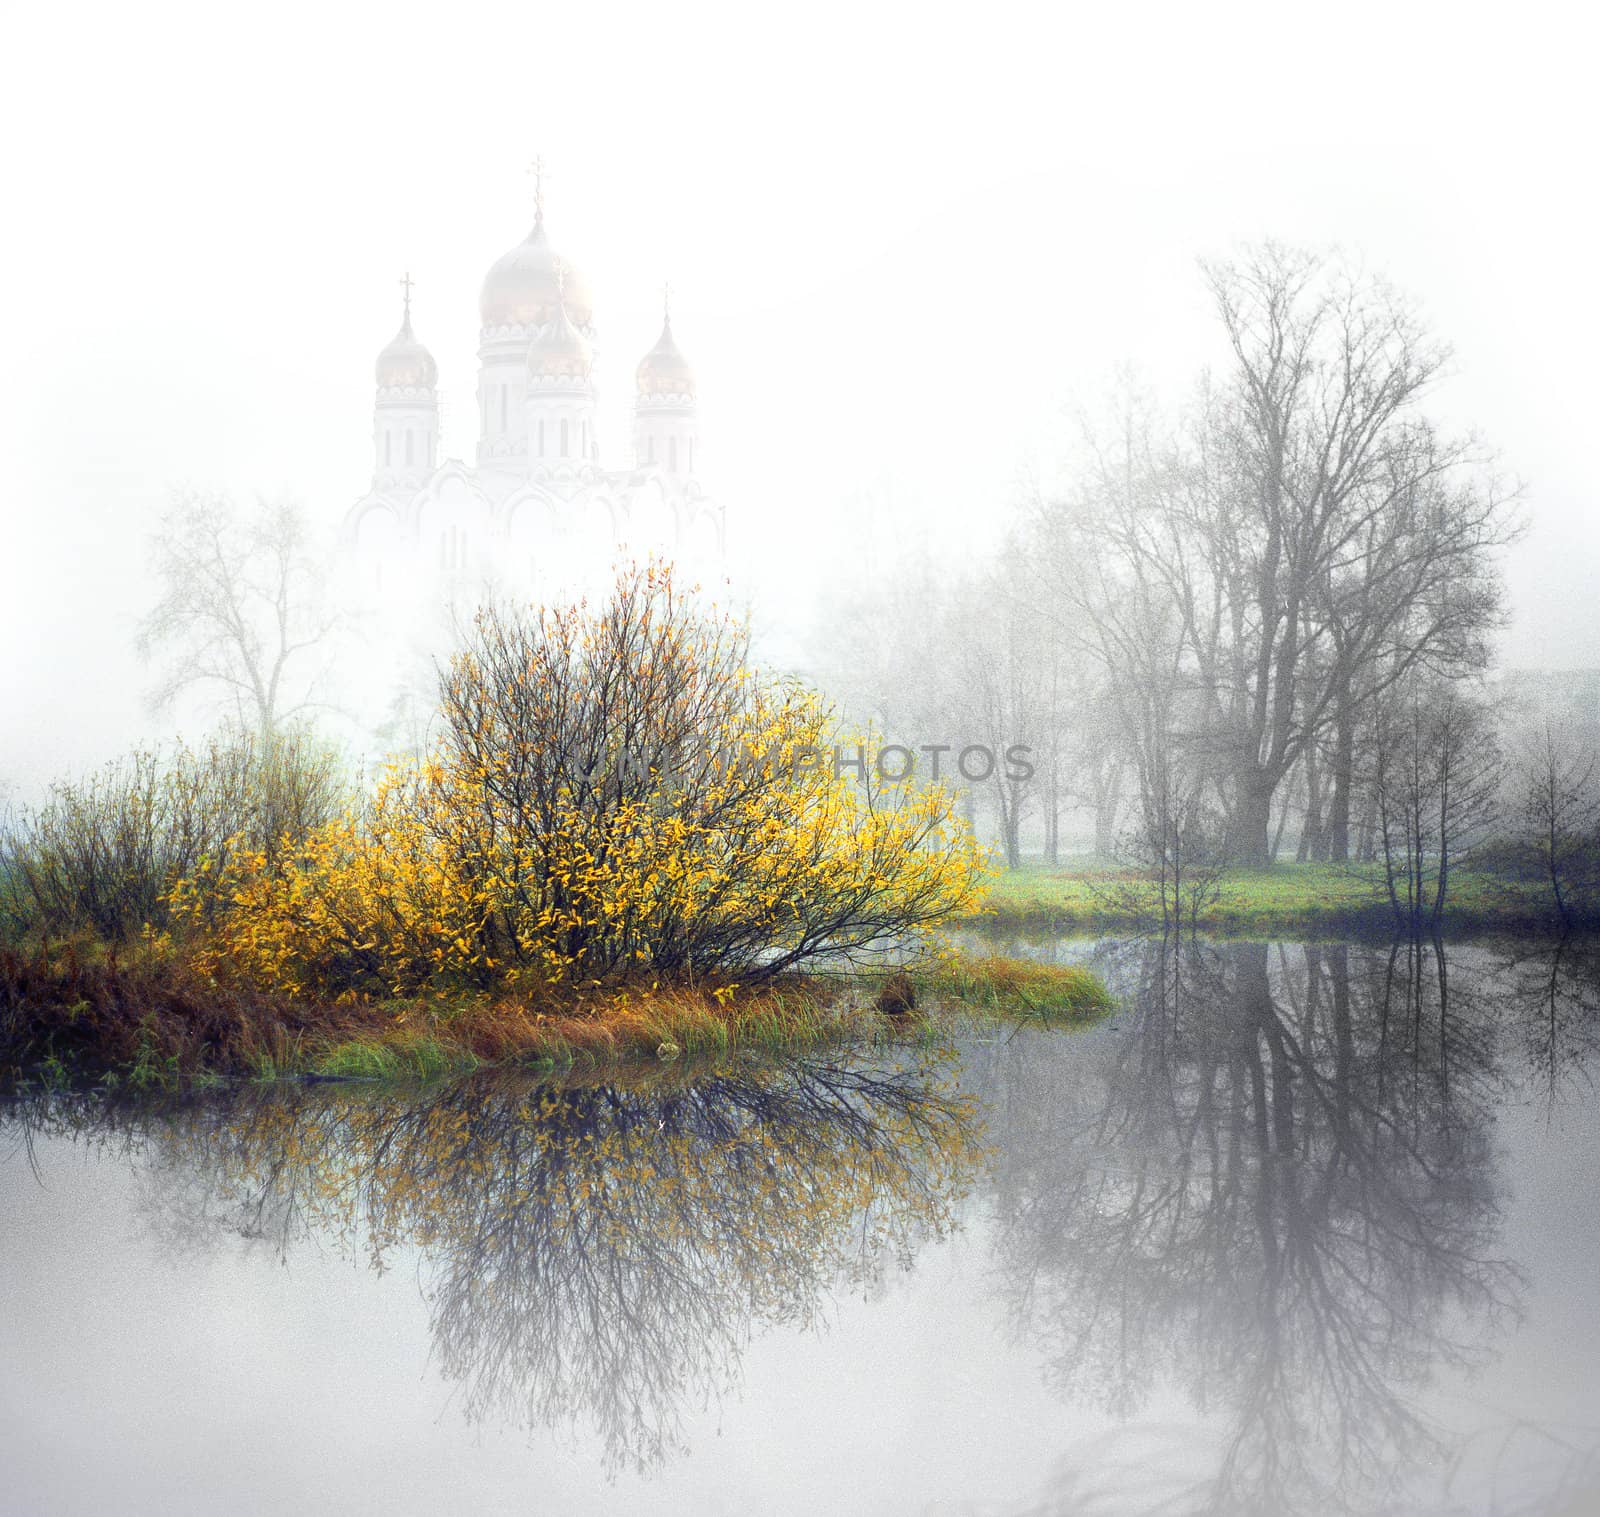 Church on the river by oleg_zhukov